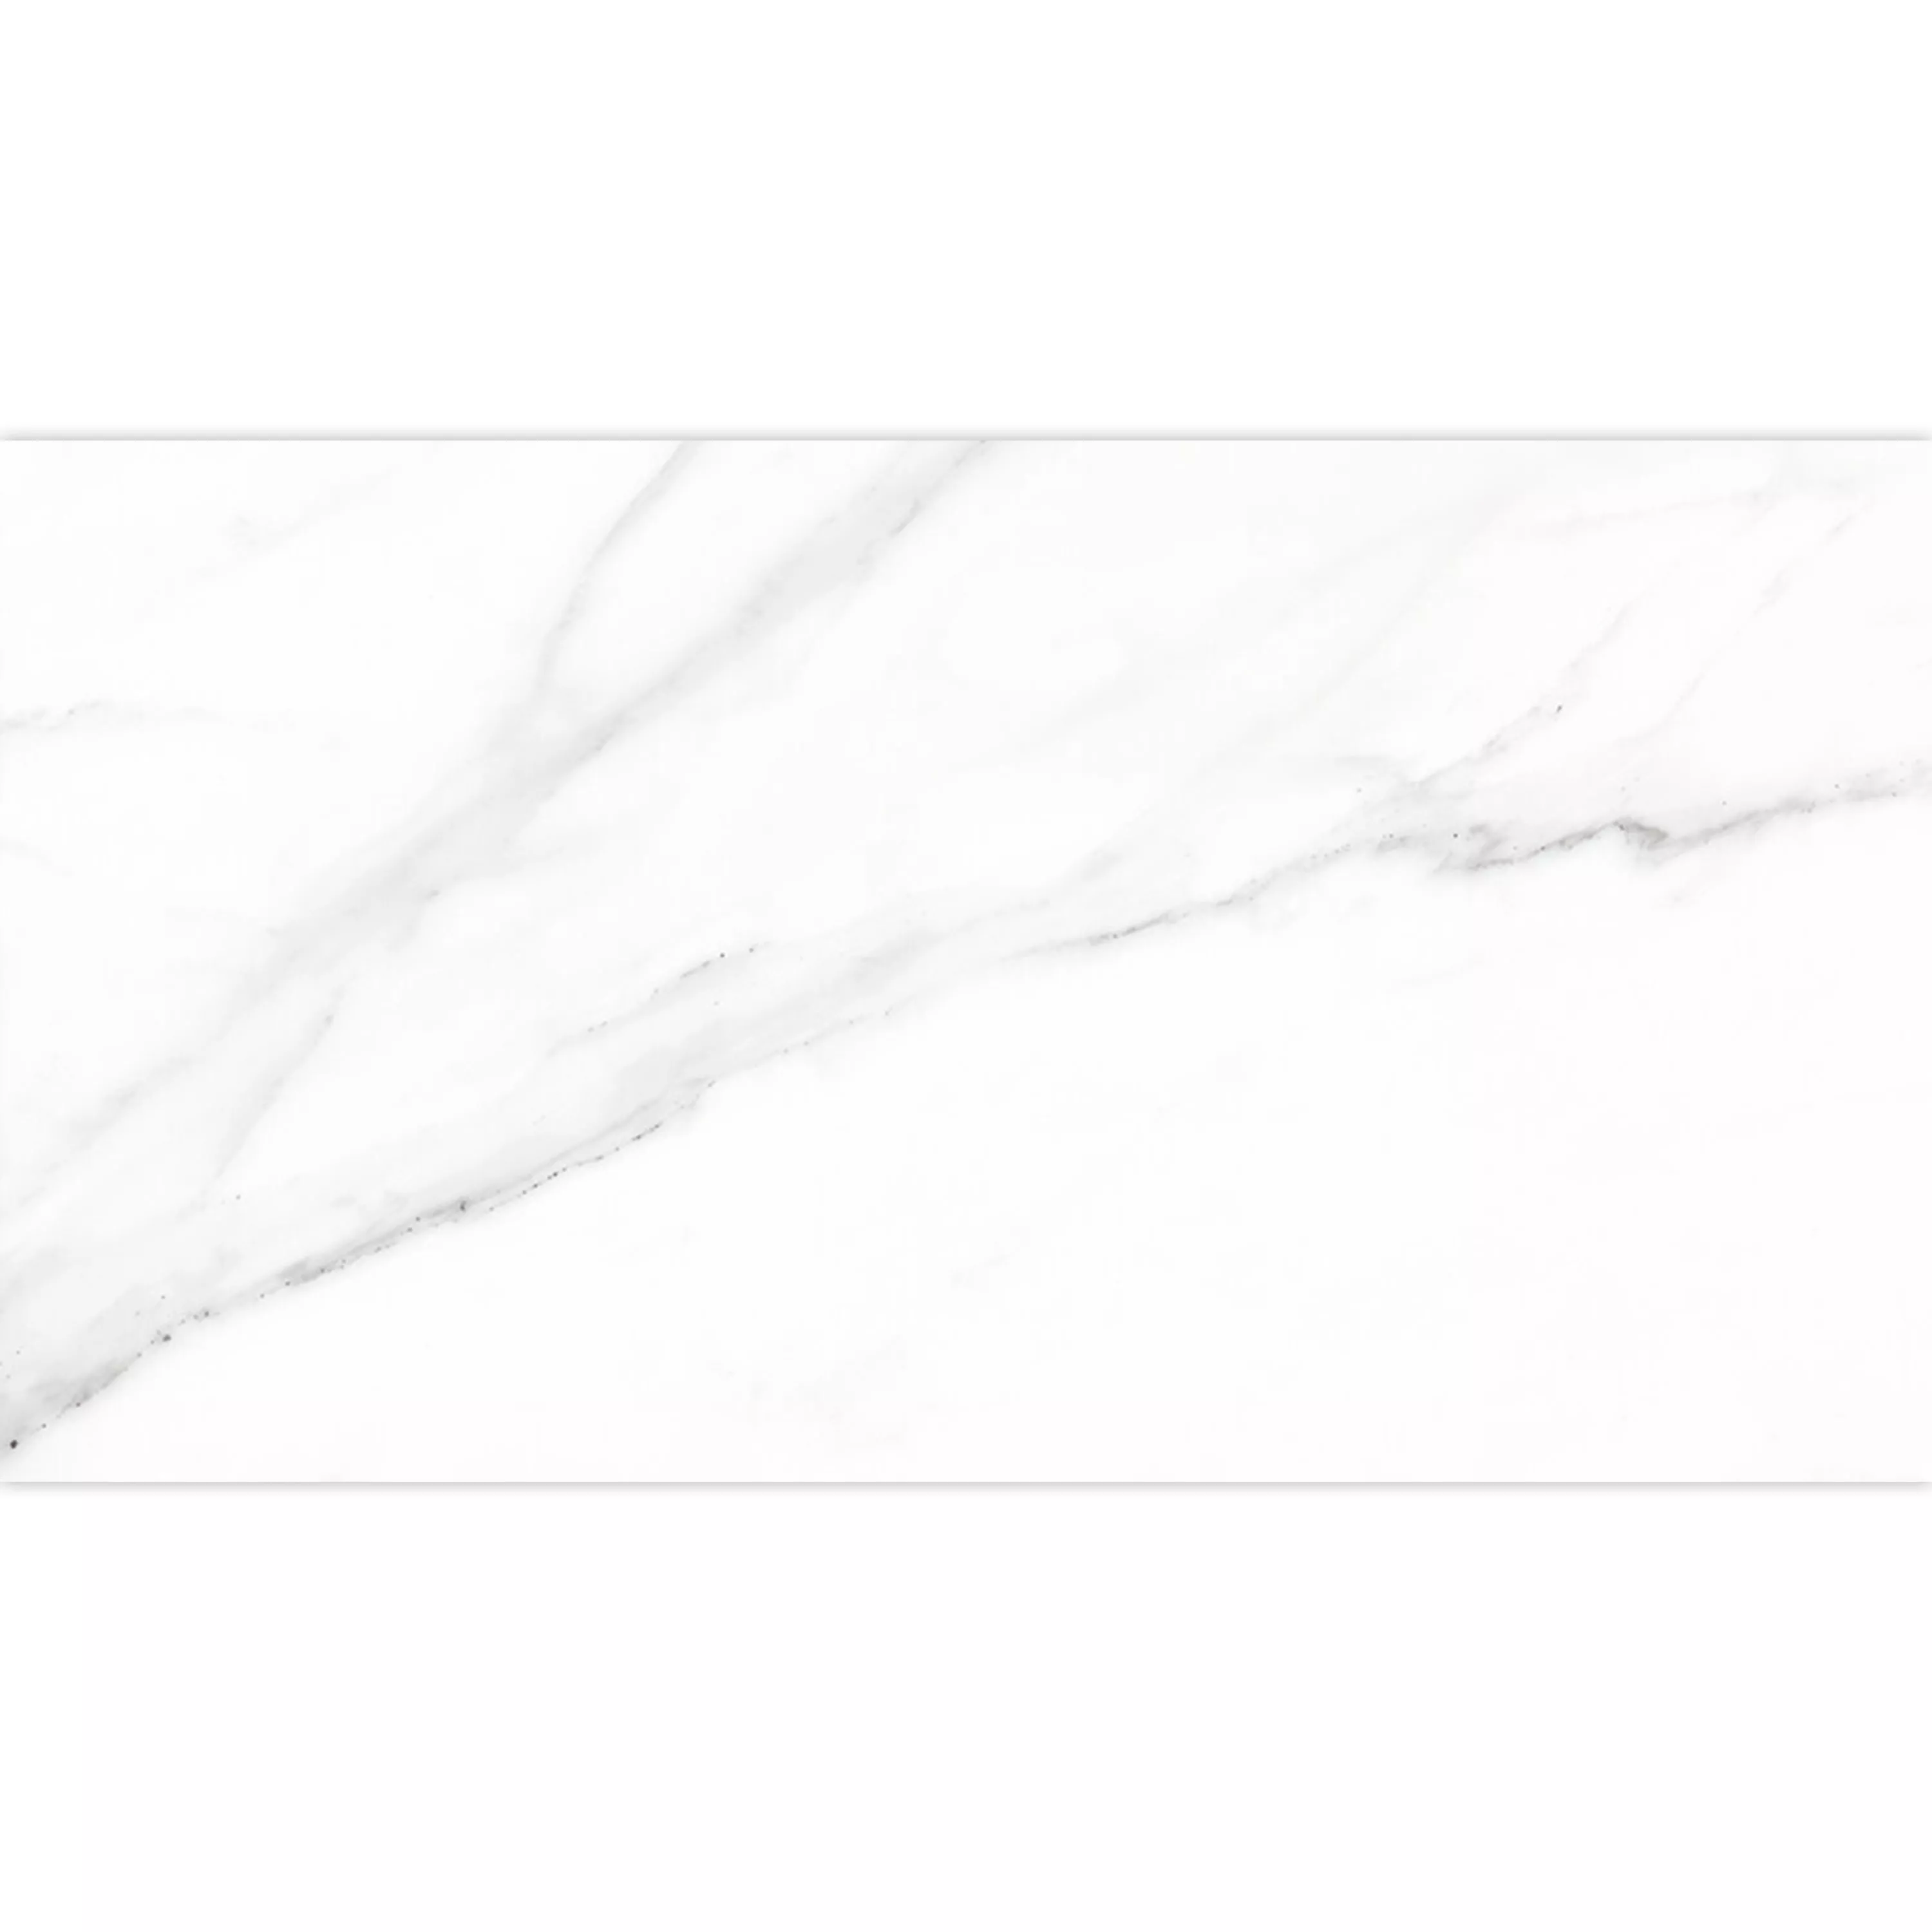 Πλακάκια Δαπέδου Arcadia Μαρμάρινη Όψη Αμεμπτος Ασπρο 30x60cm